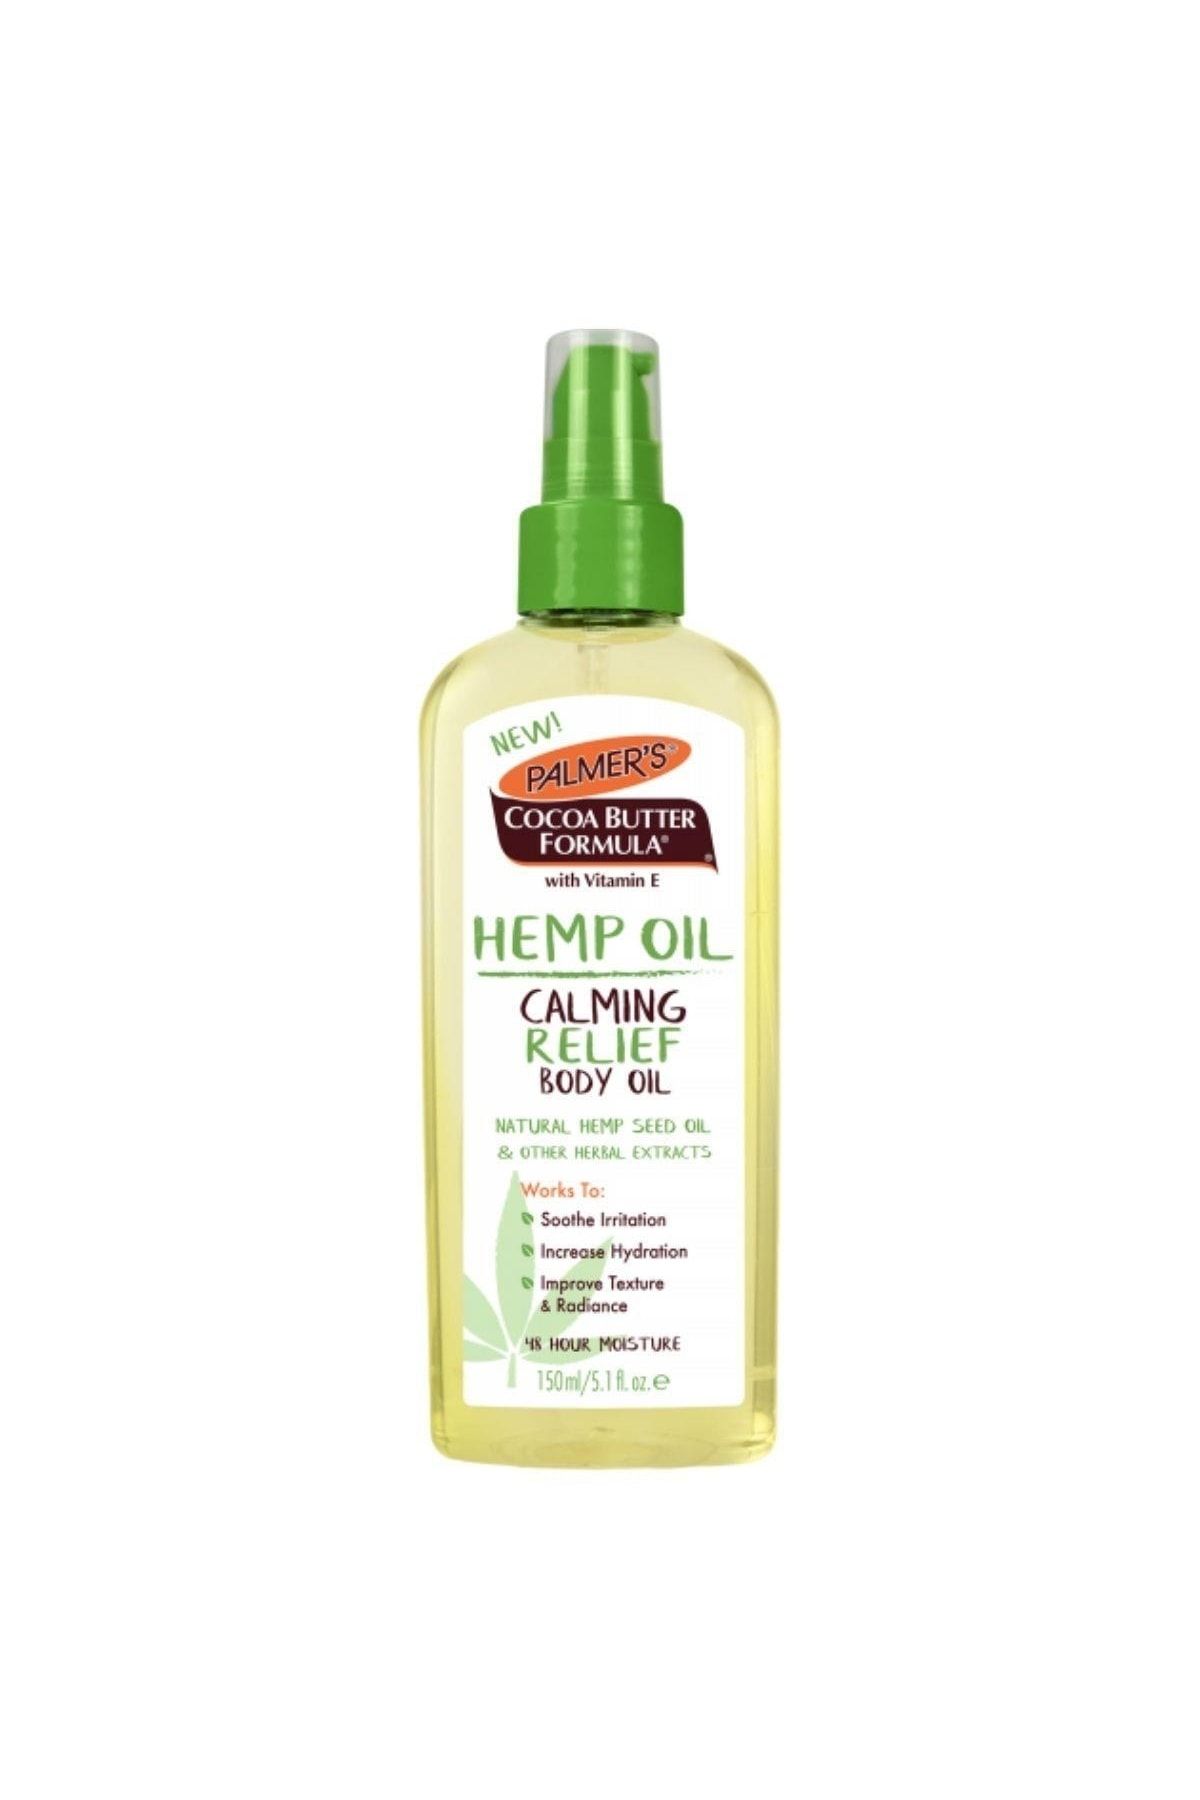 PALMER'S Hemp Oil Calming Relief Body Oil 150 ml Rahatlatıcı Vücut Yağı